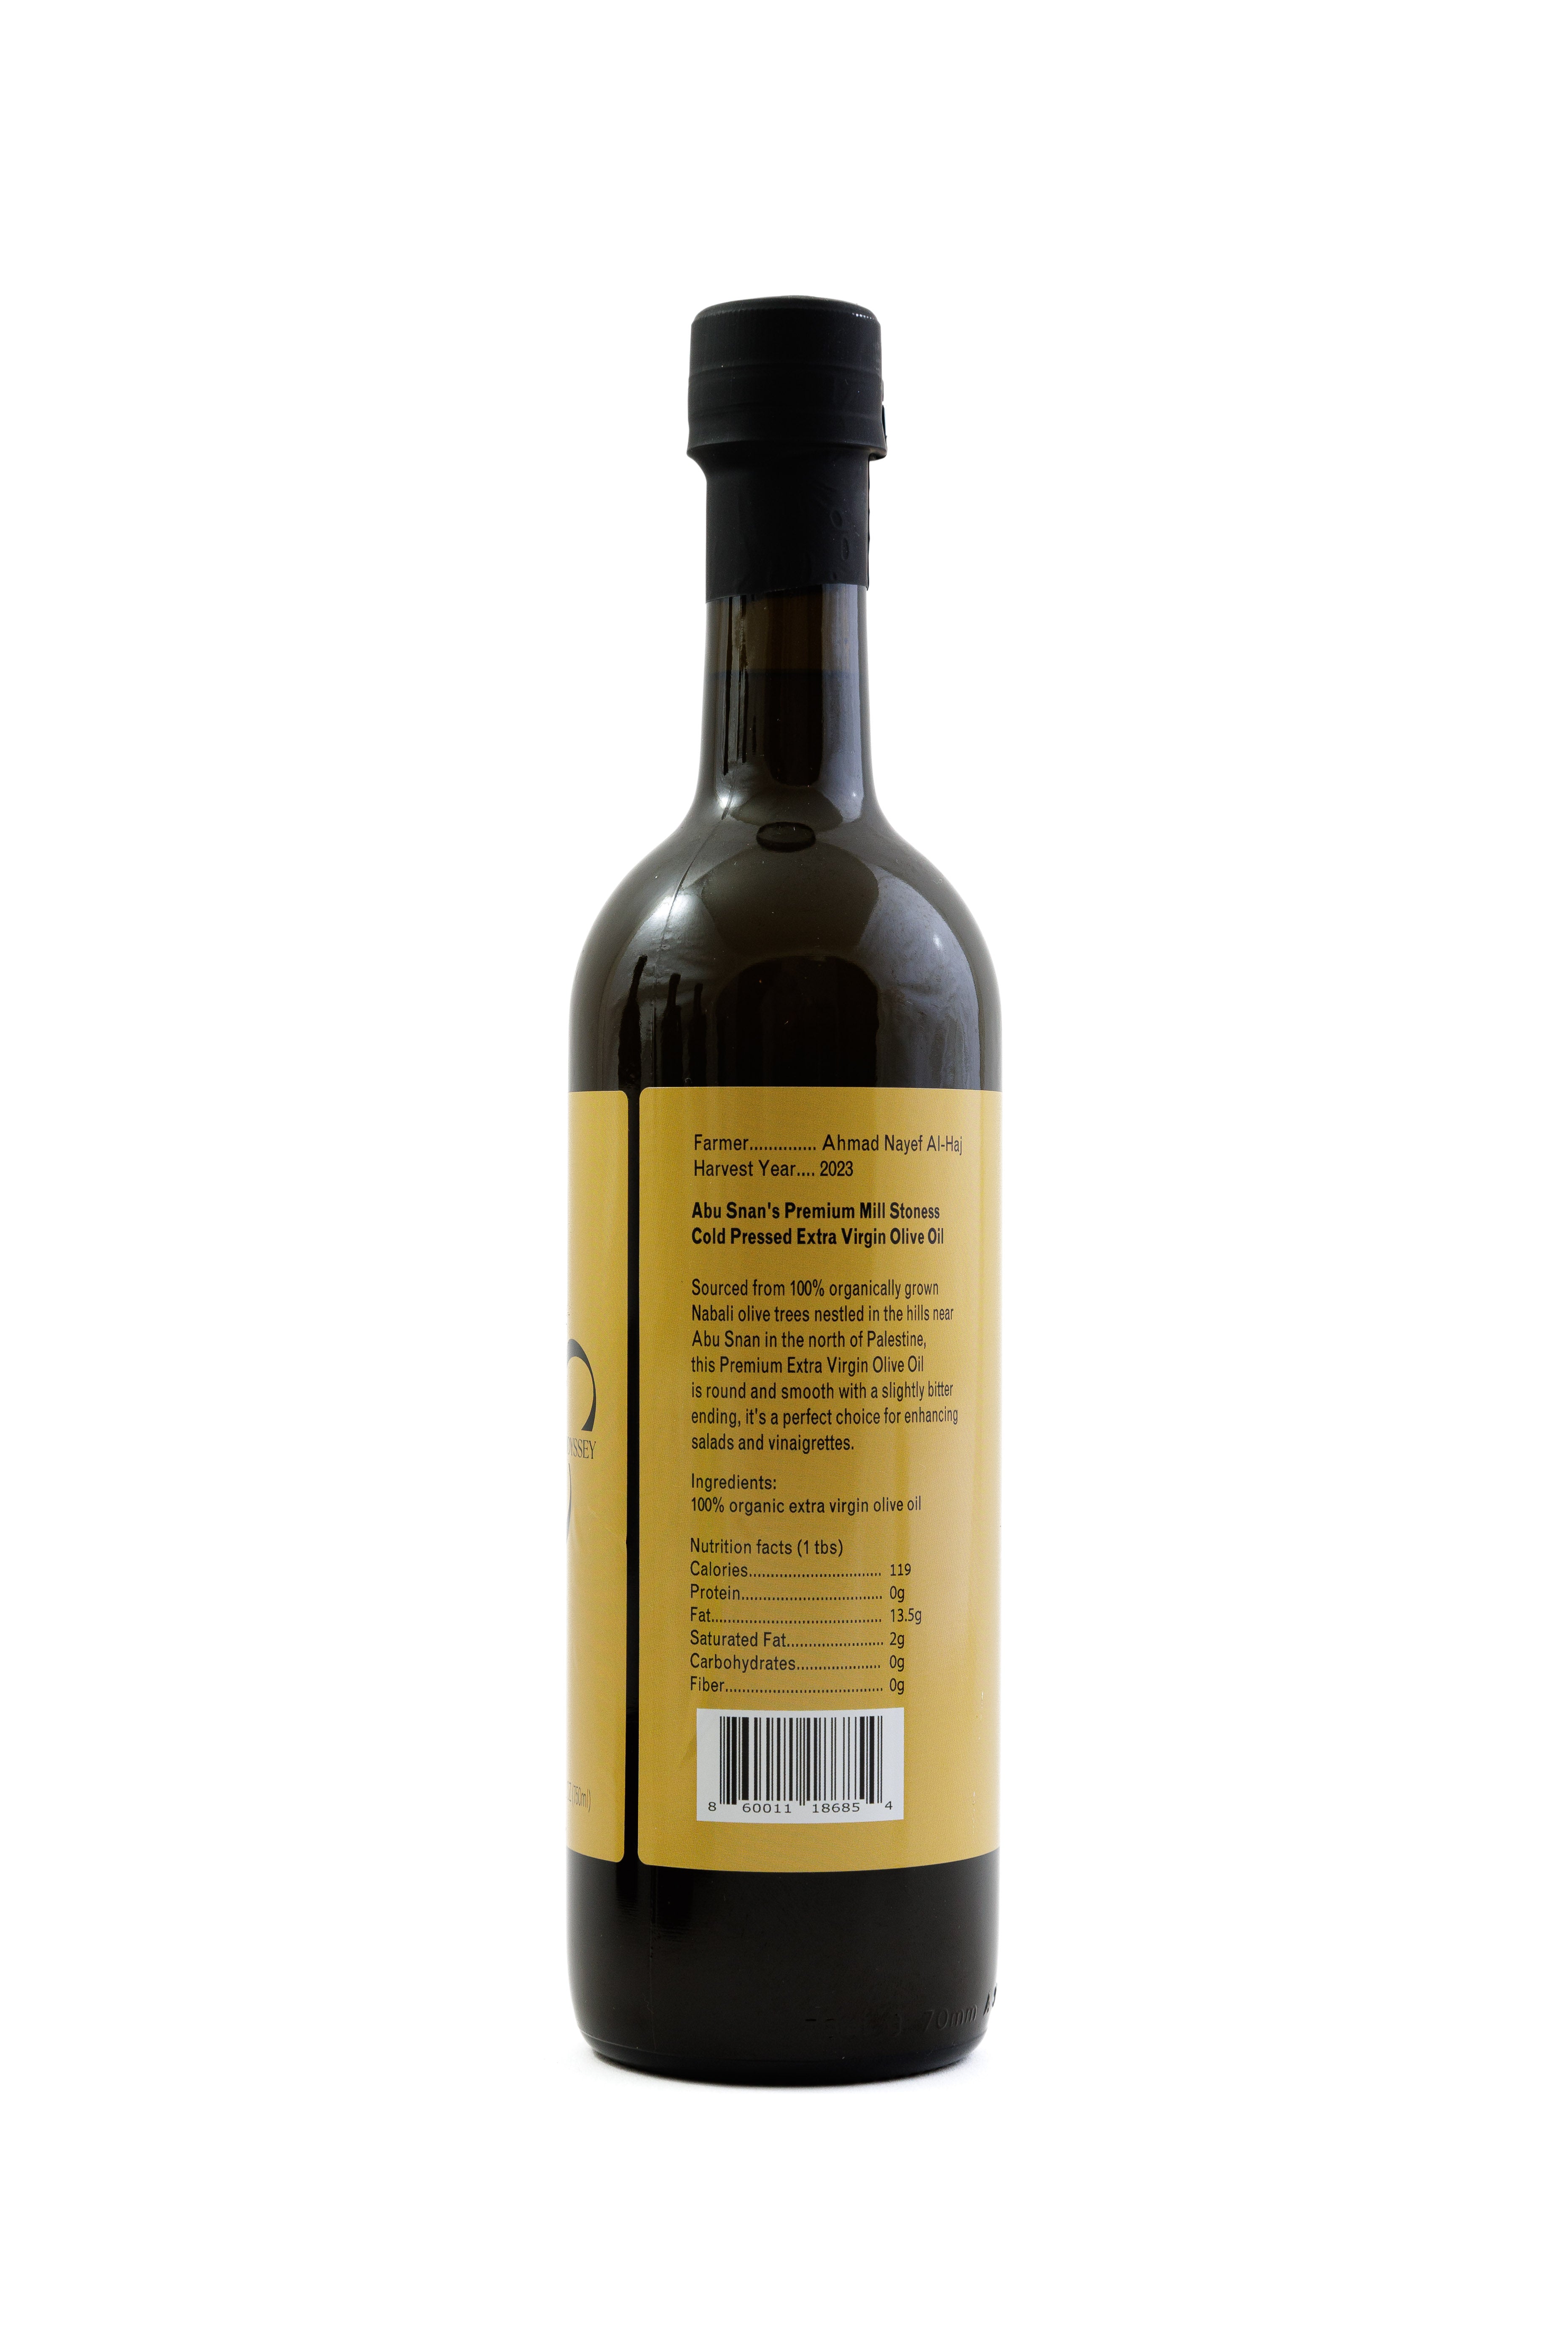 Aus Mühlsteinen extrahiertes Olivenöl von Abu Snan – weich, pikant und vollmundig [Erntejahr: 2023]